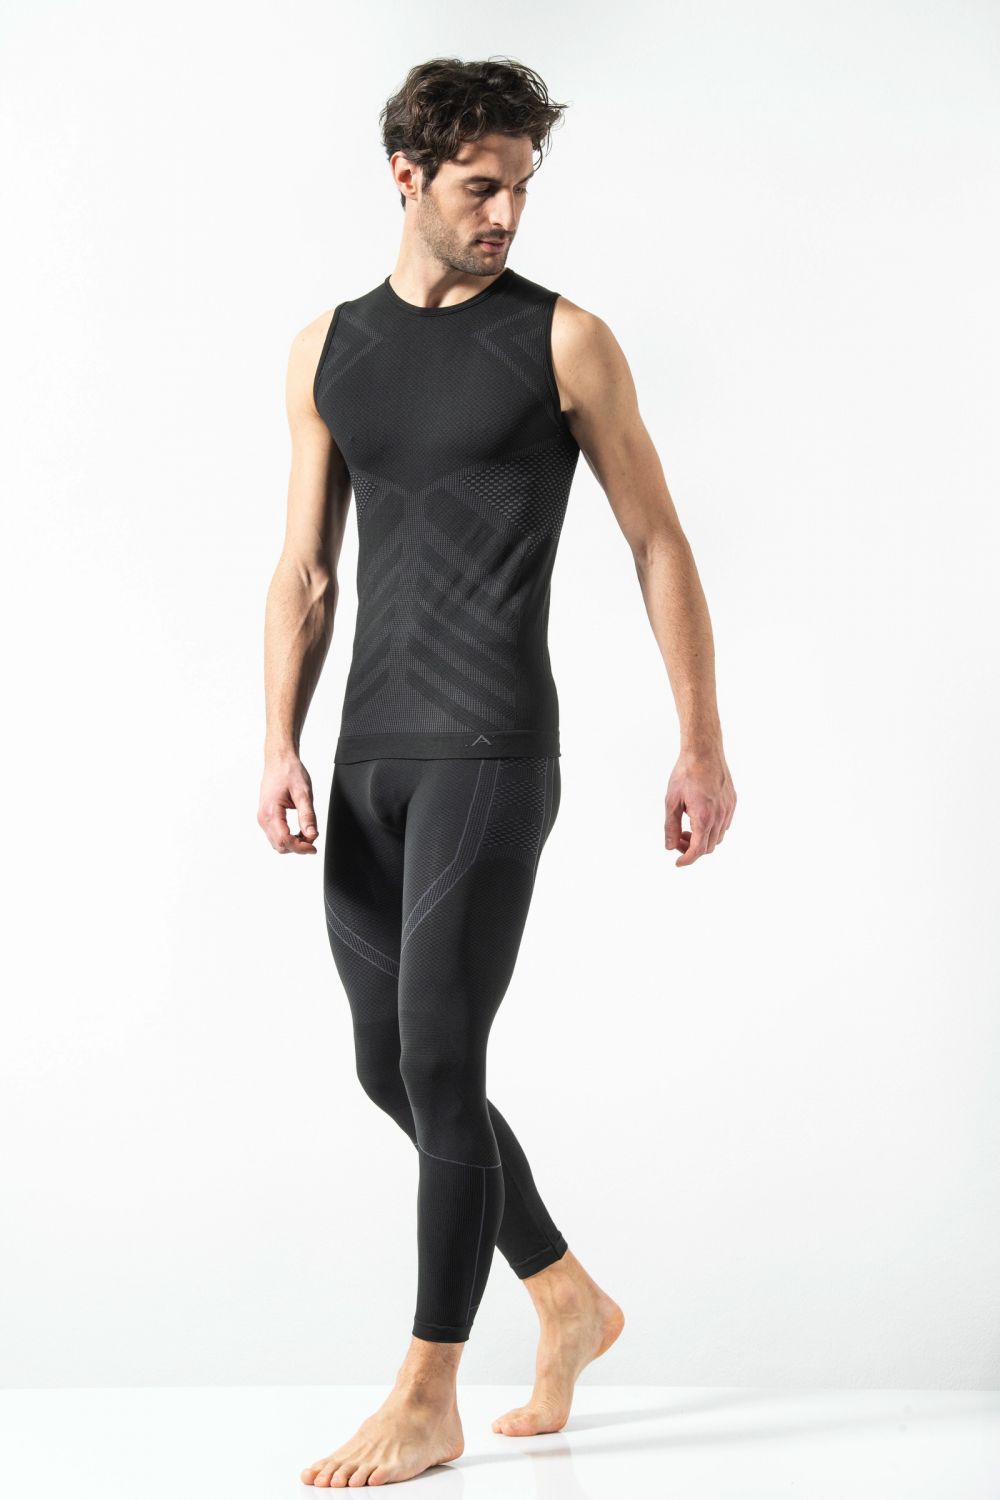 Pantalone Termico Uomo Leggings Energy, comfort e traspirabilità